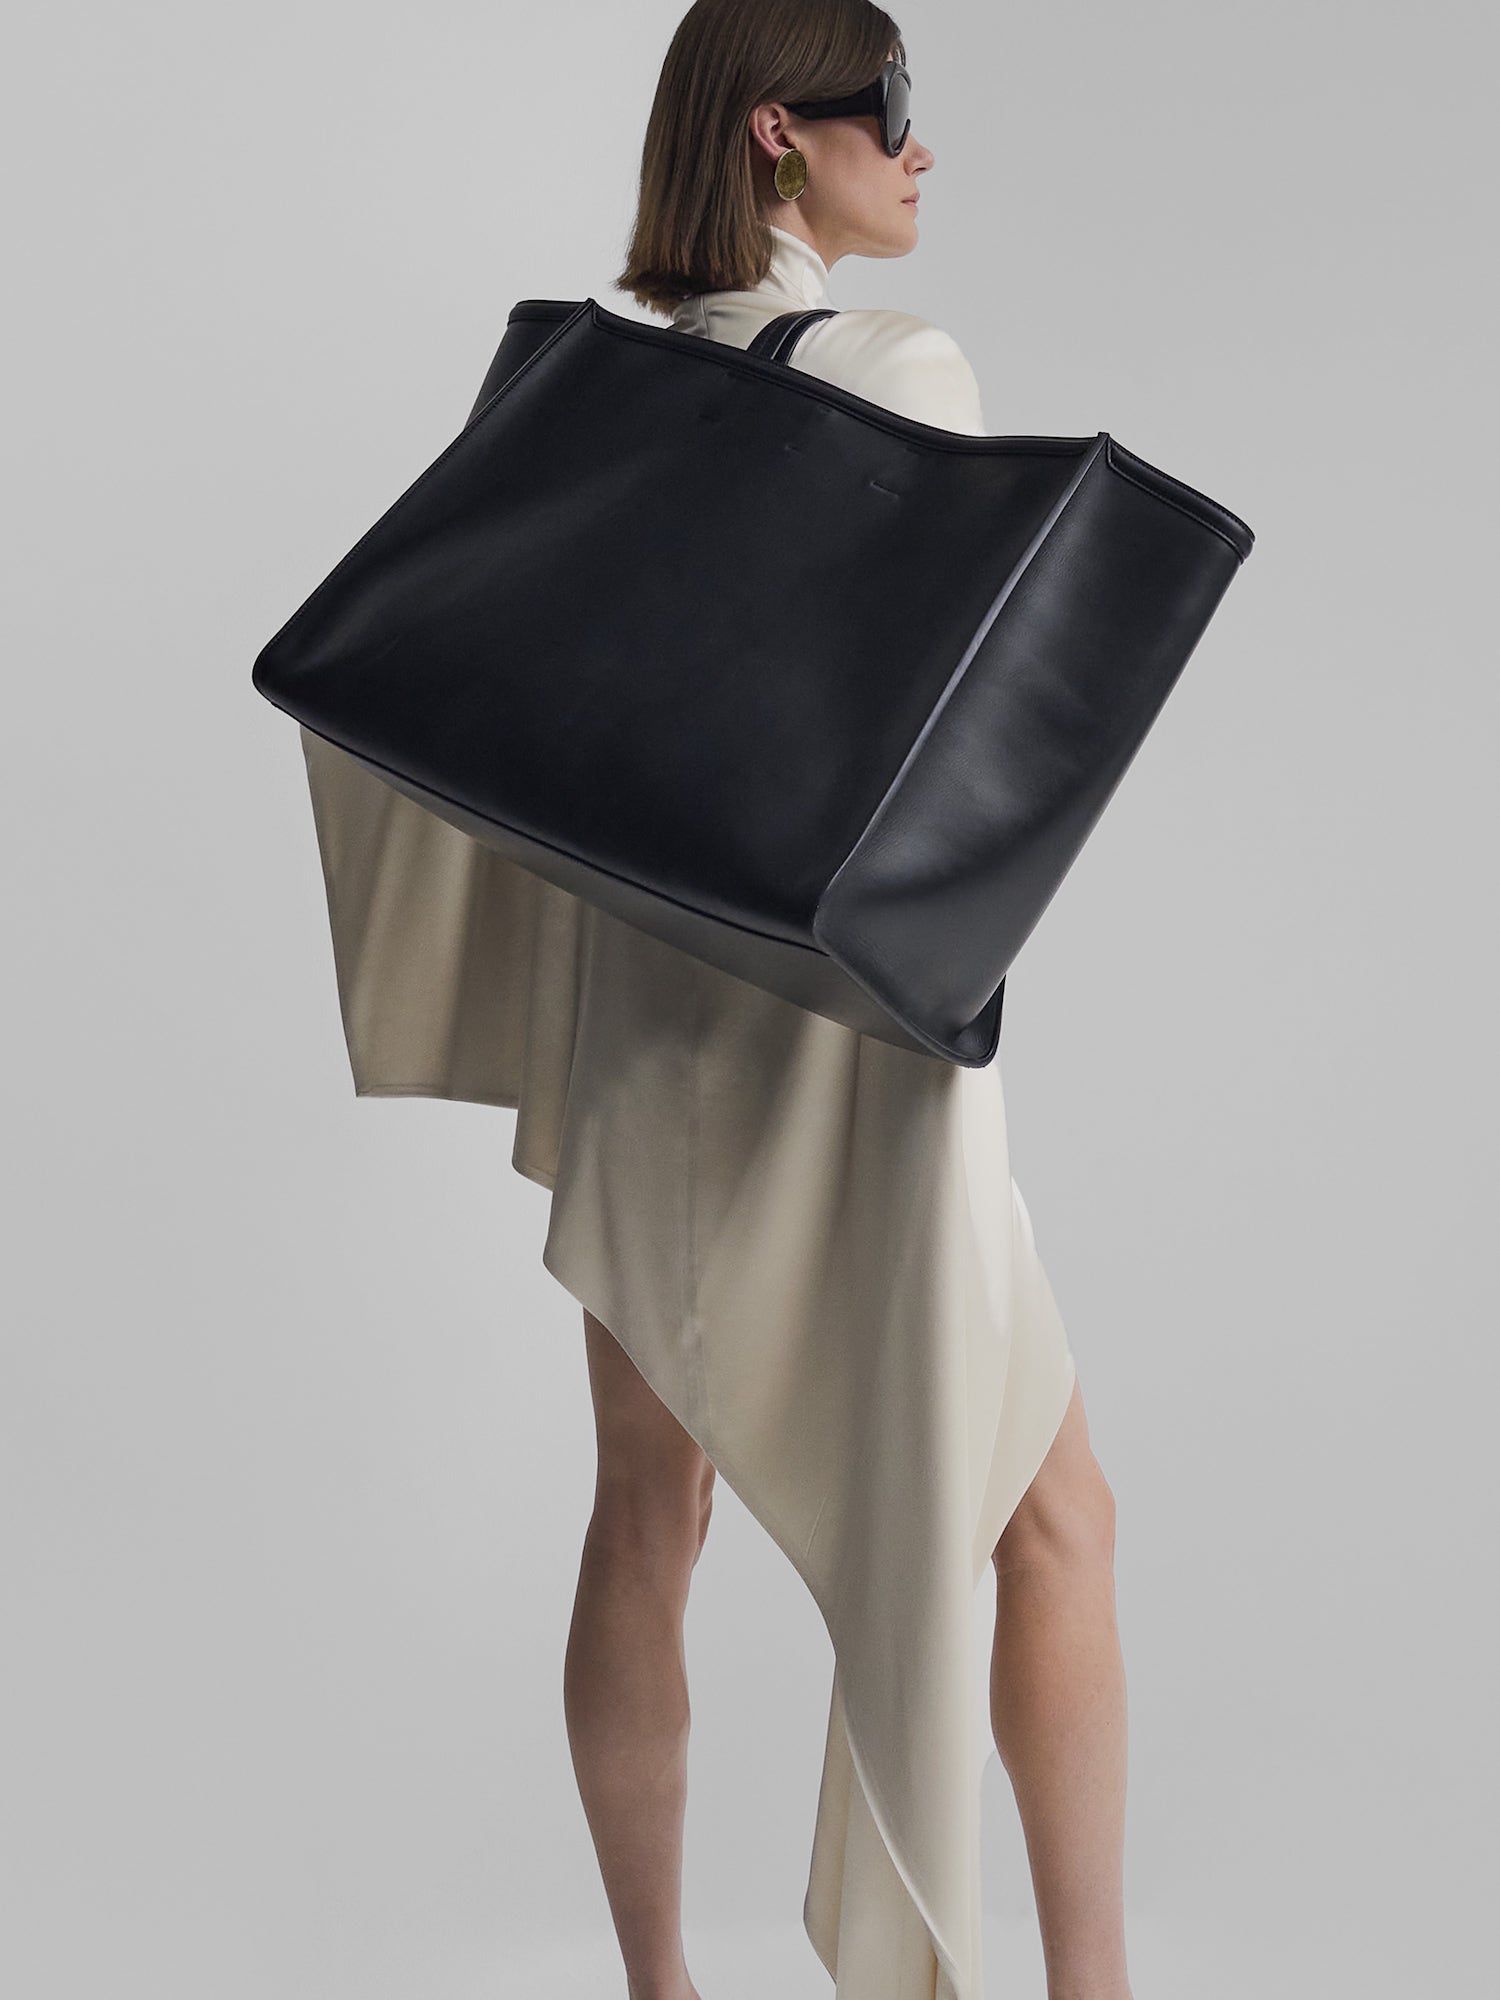 Modelo com uma bolsa preta Phoebe Philo XL Caba em um vestido branco assimétrico e óculos de sol grandes